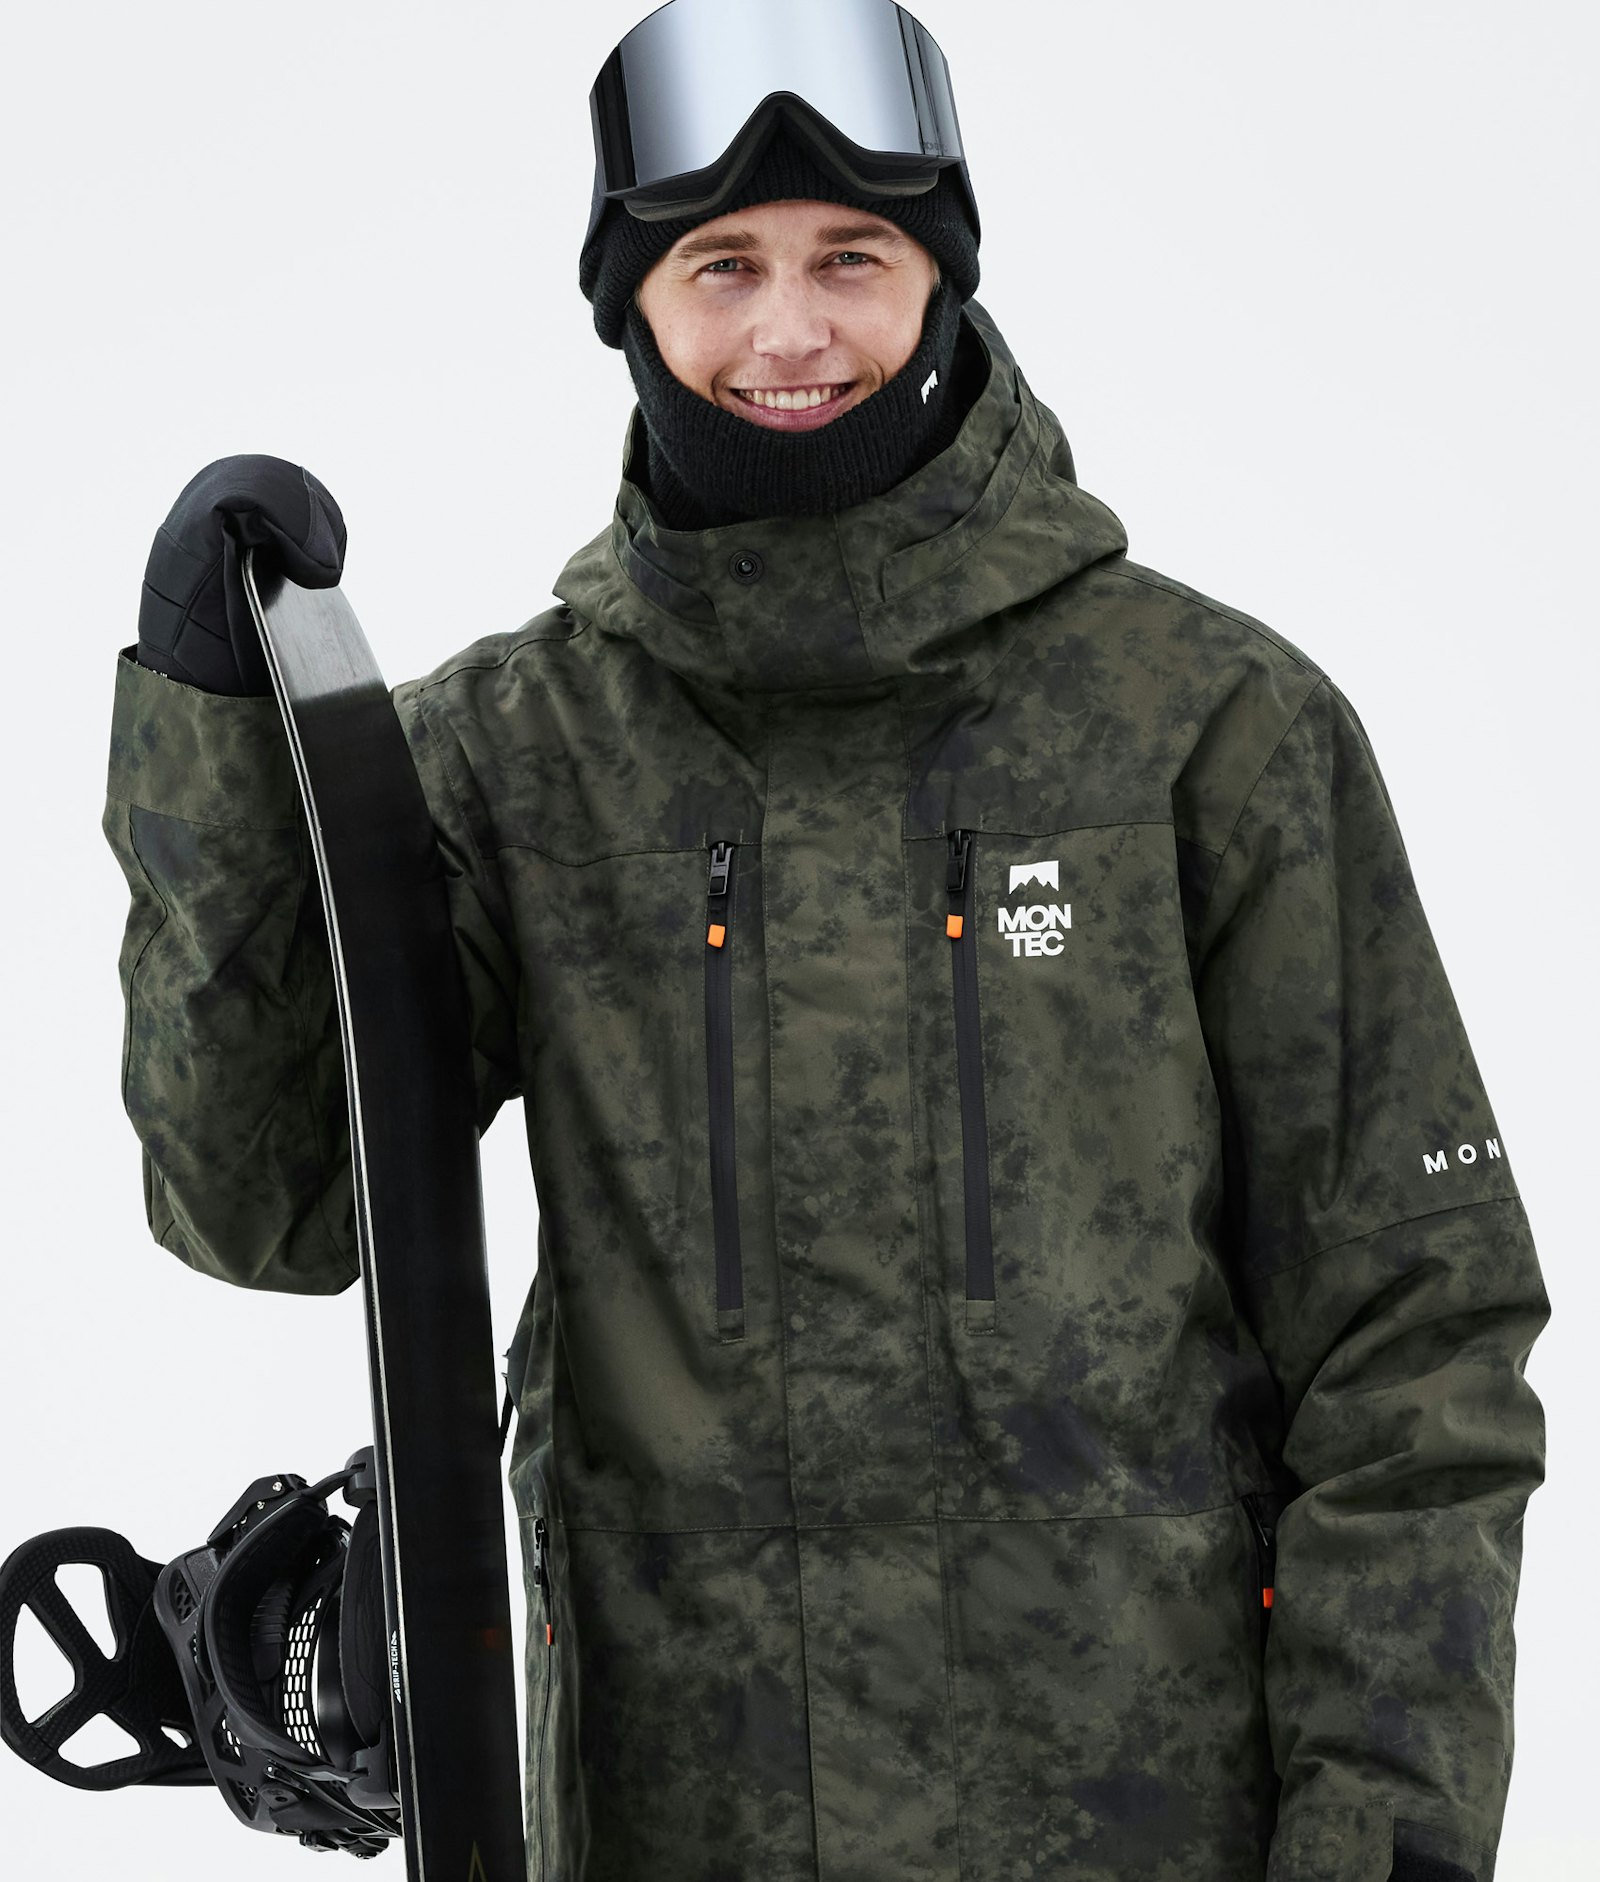 Fawk 2021 Veste Snowboard Homme Olive Green Tiedye Renewed